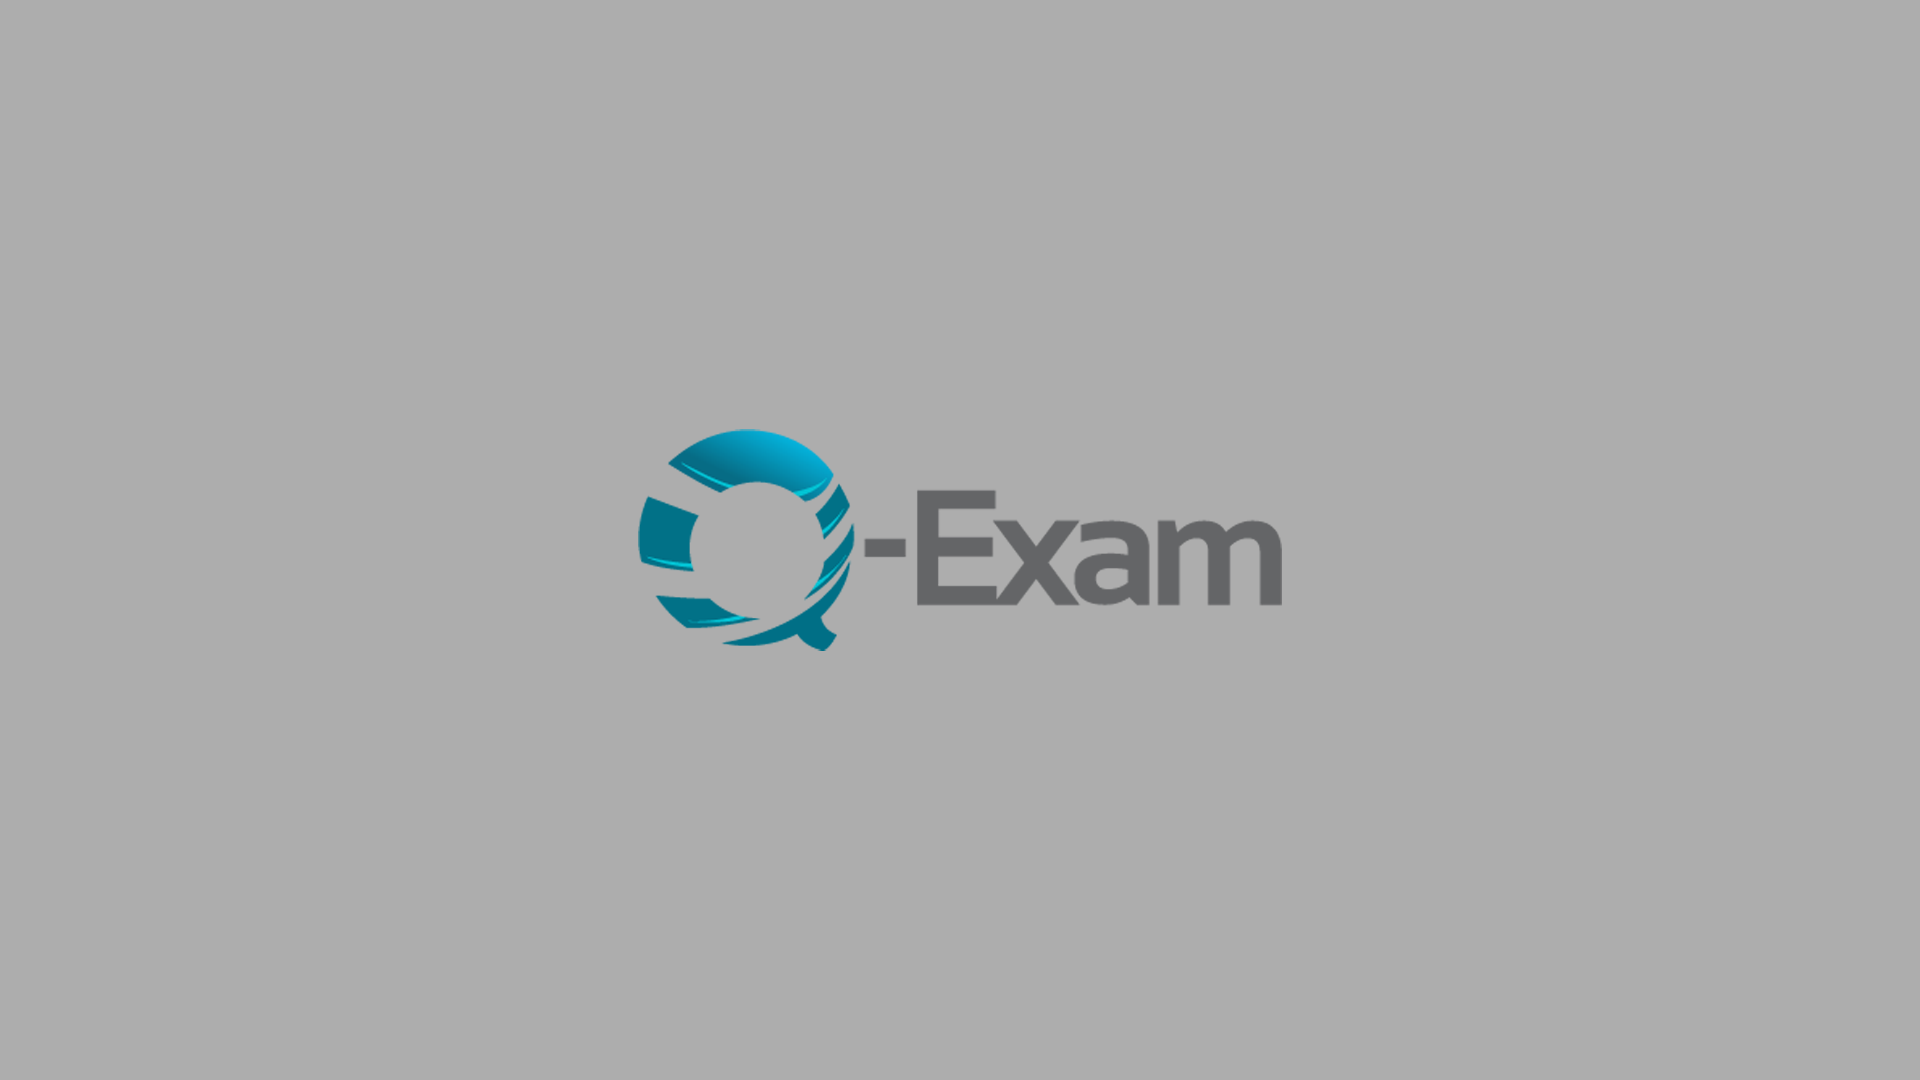 Q-Exam Logo